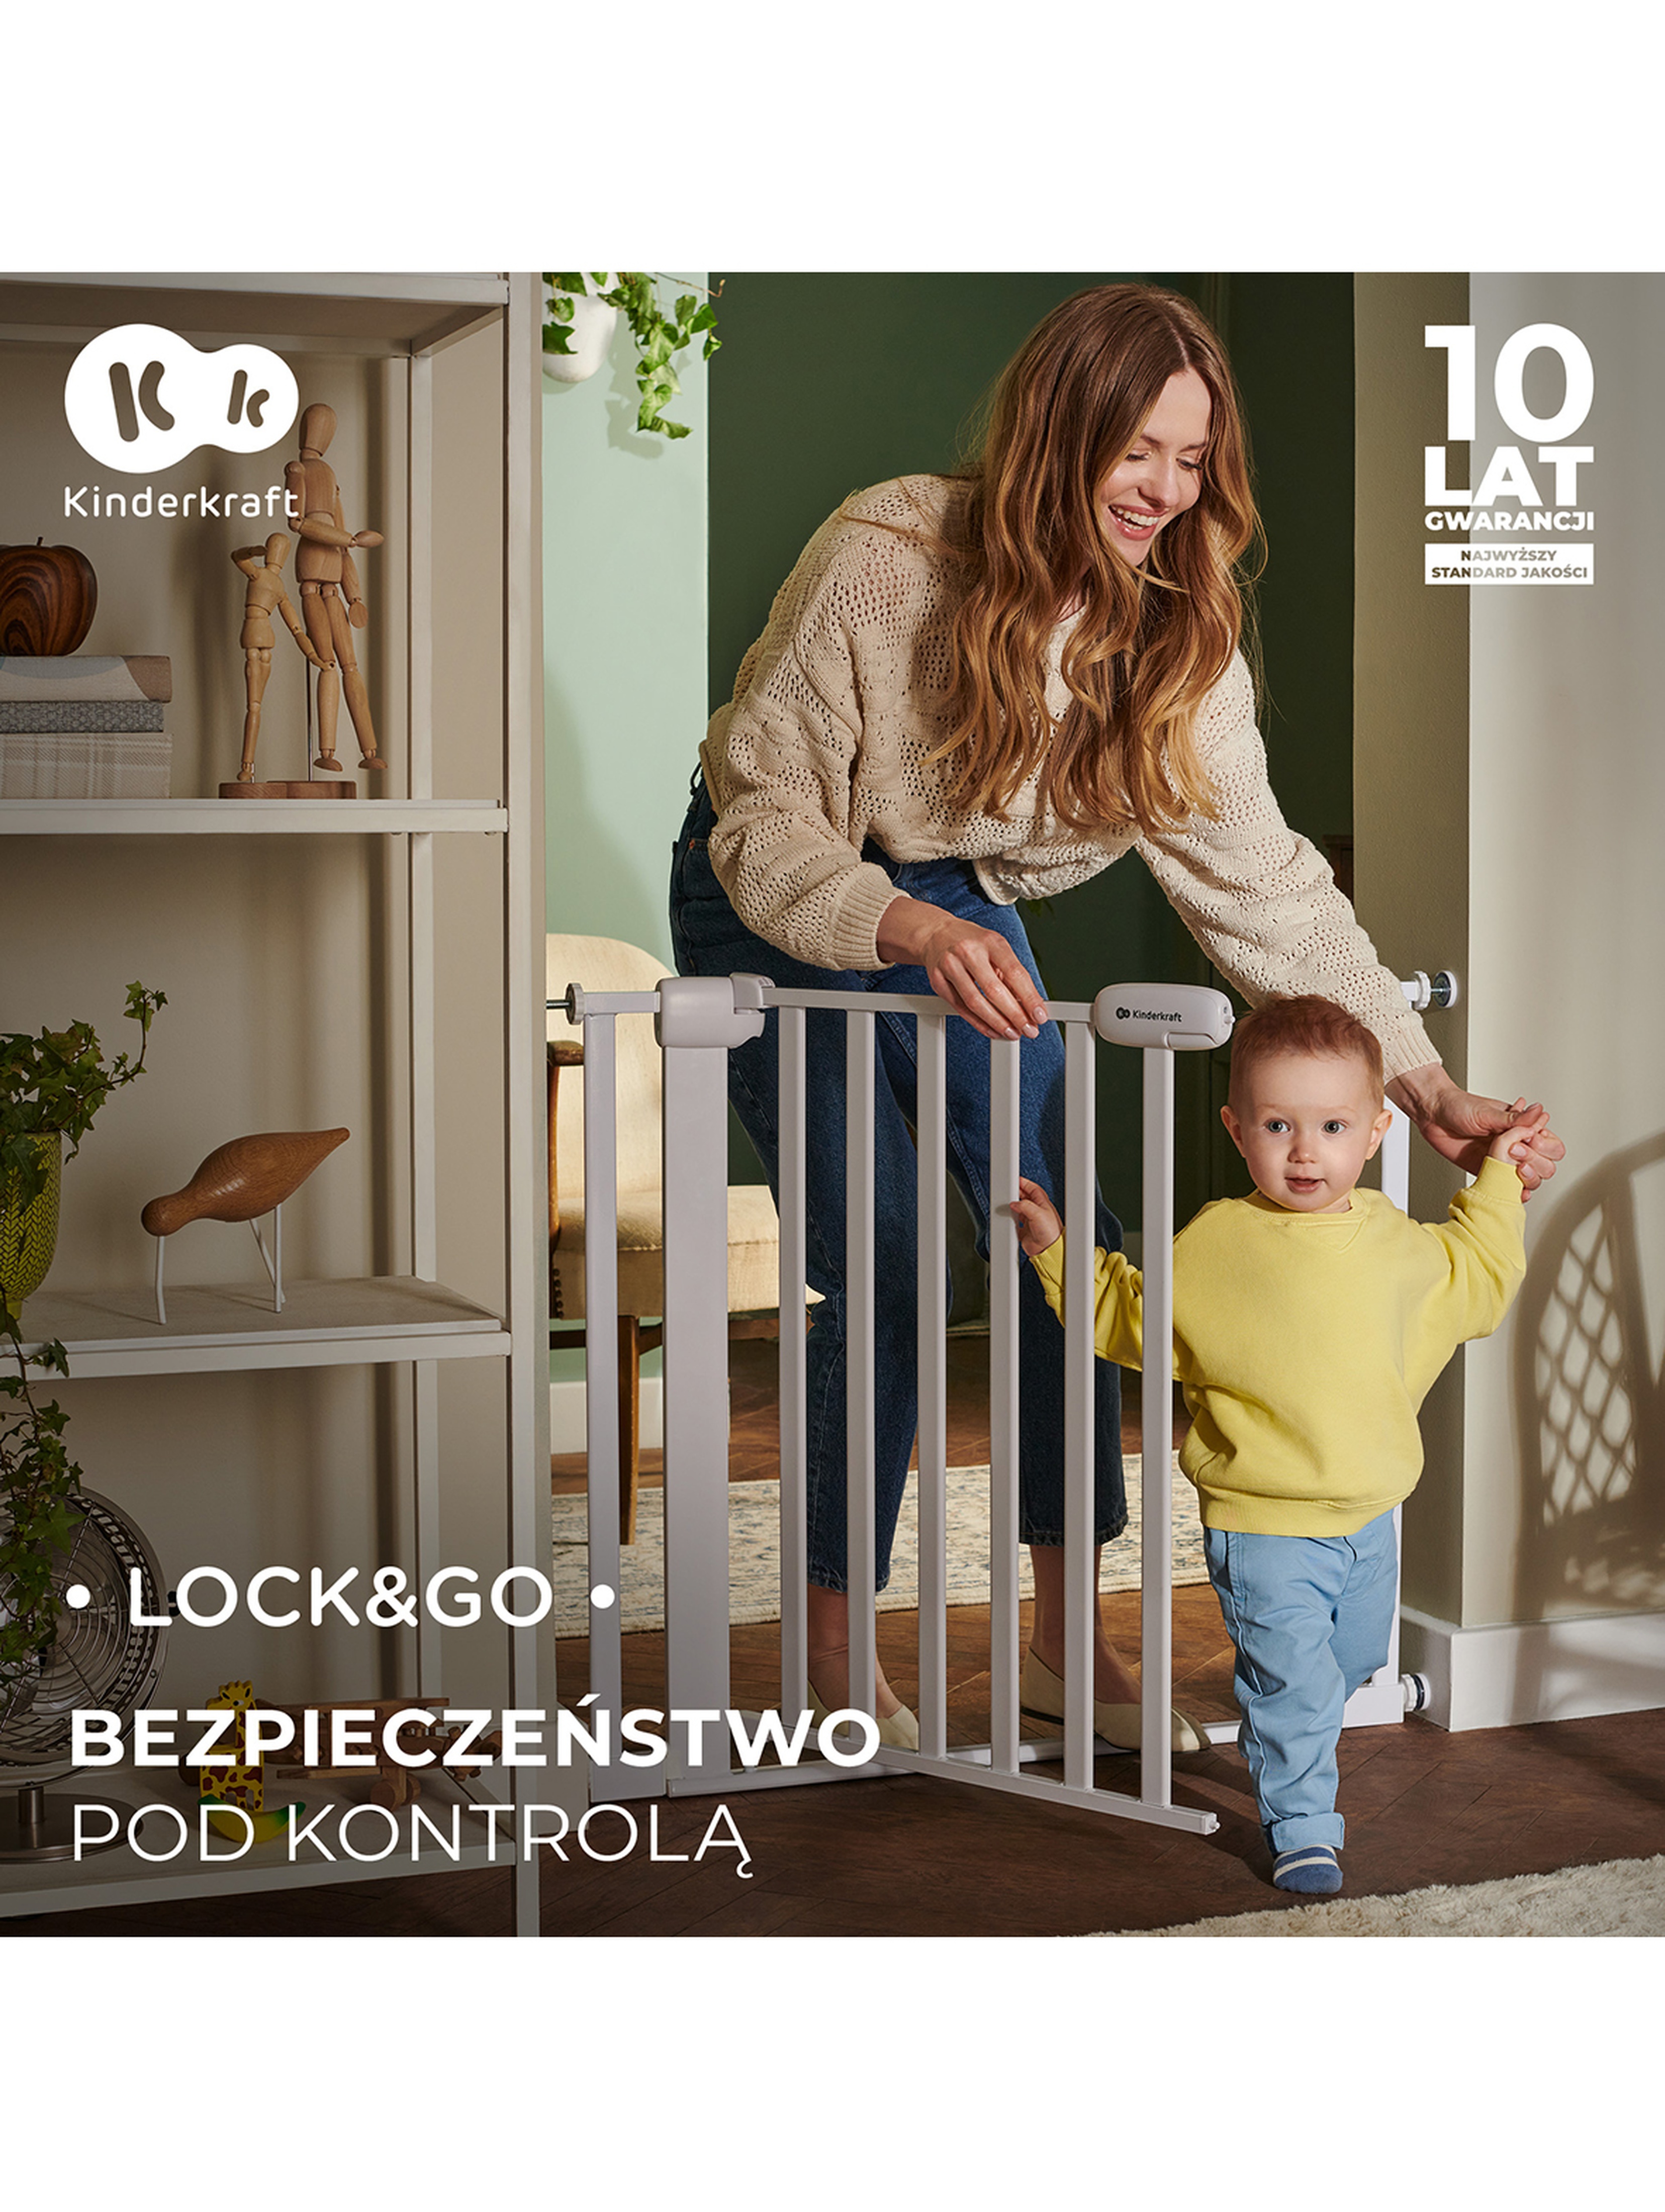 Bramka zabezpieczająca LOCK&GO SAFETY GATE Kinderkraft - wood